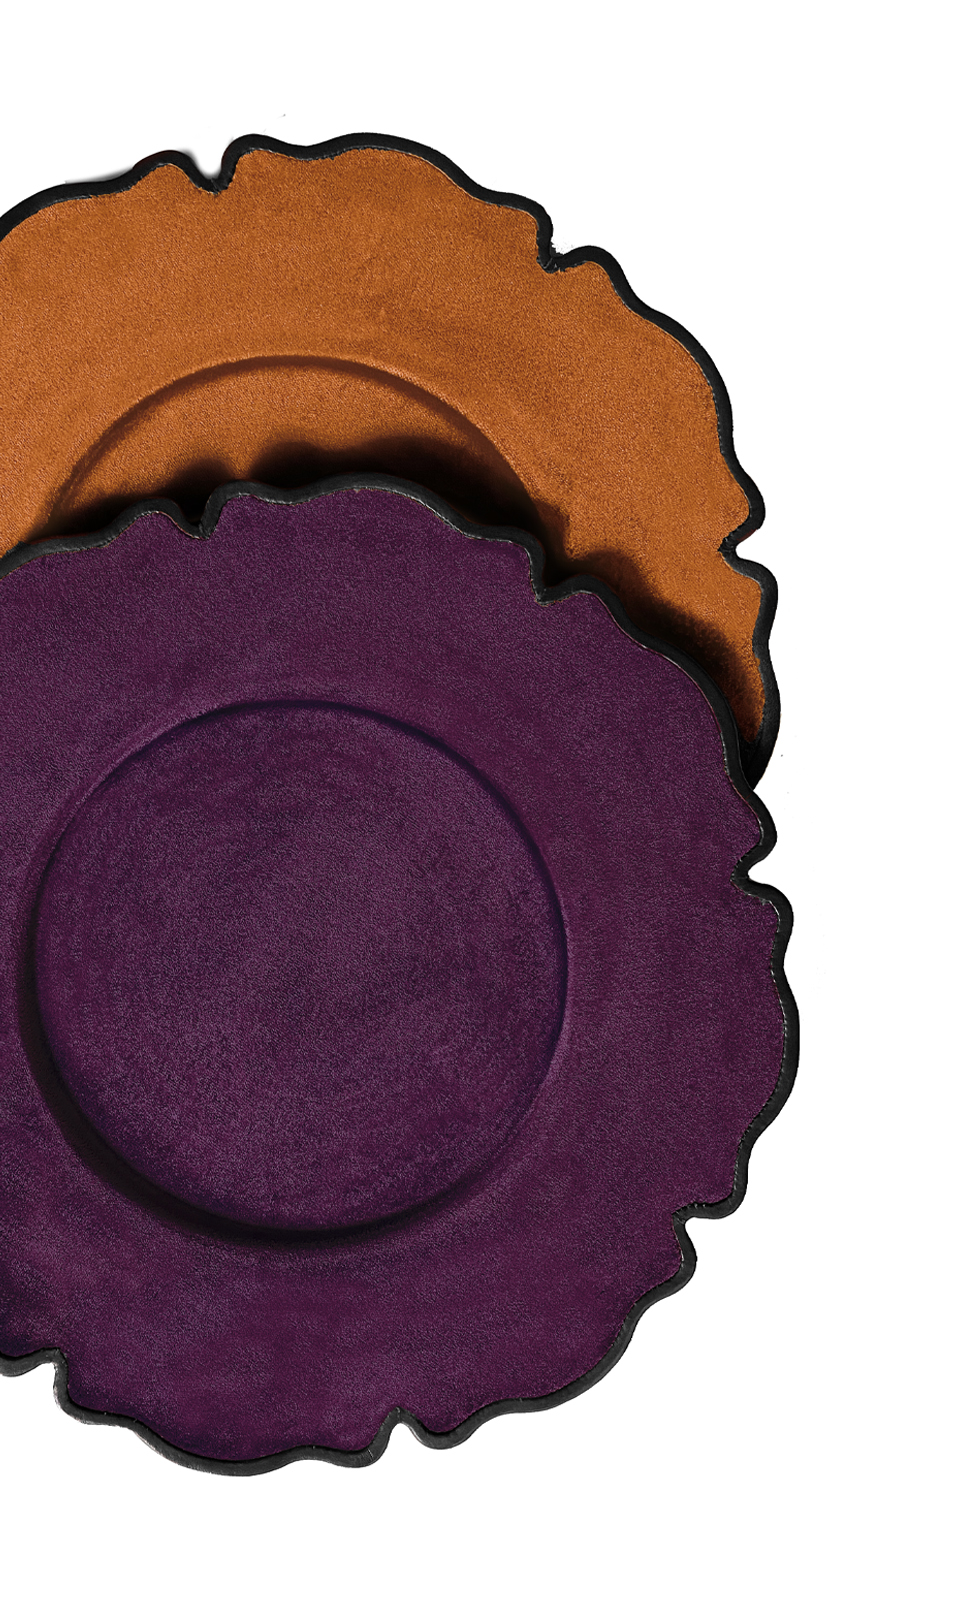 „Ibisco“ ist ein Platzteller aus Leder oder Samt in Form einer Blume, aus dem Katalog von Promemoria | Promemoria